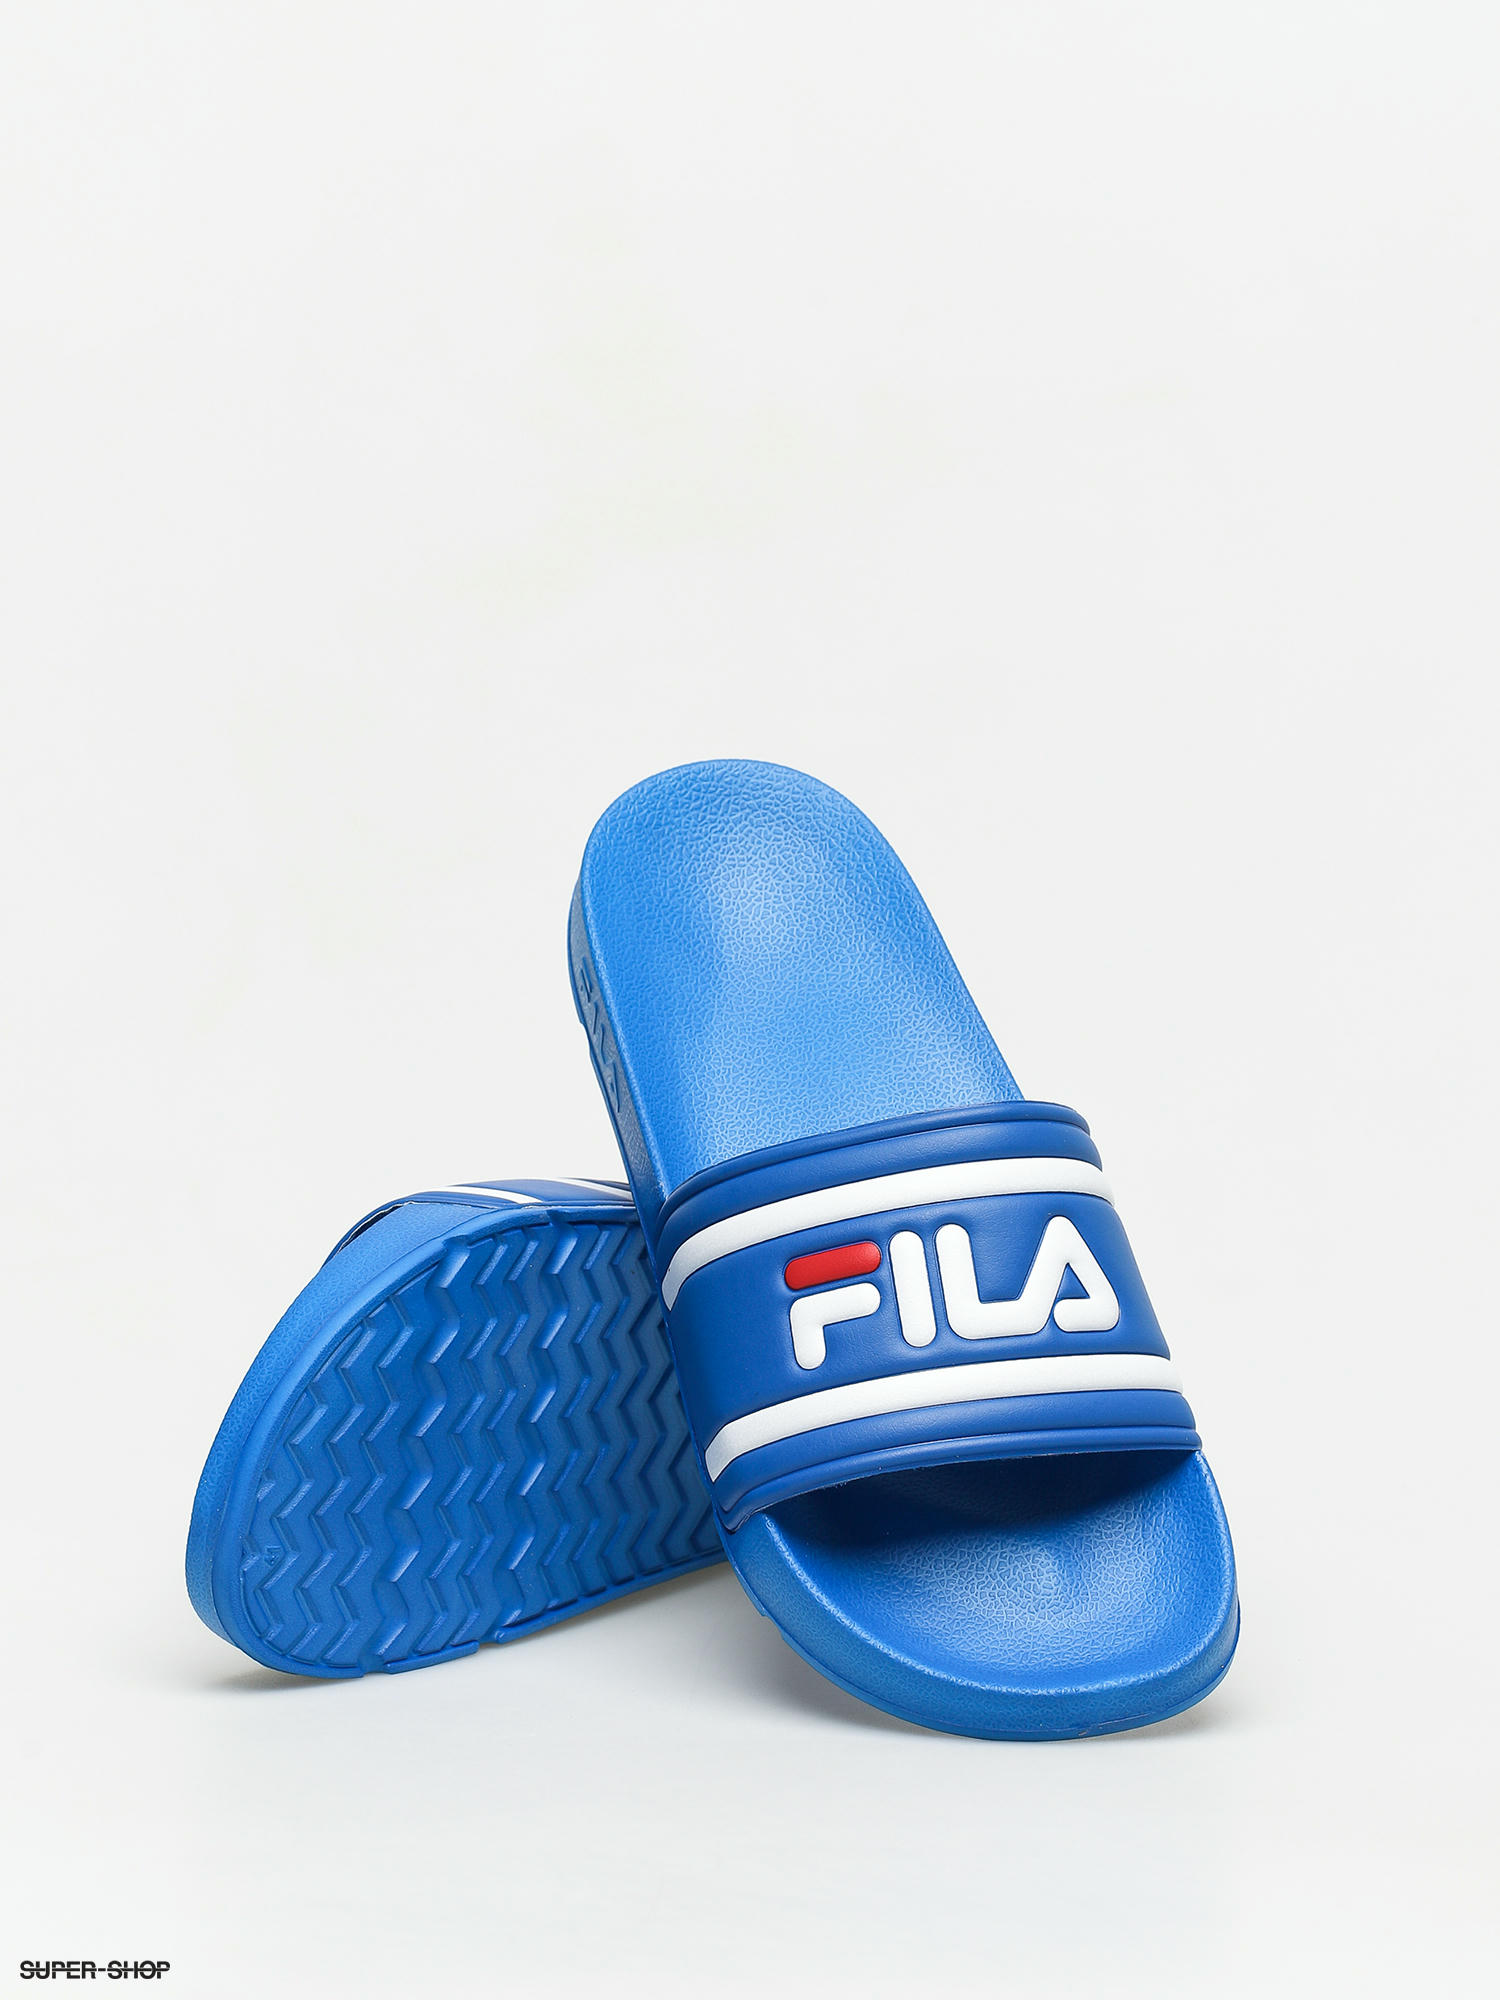 fila flip flops blue